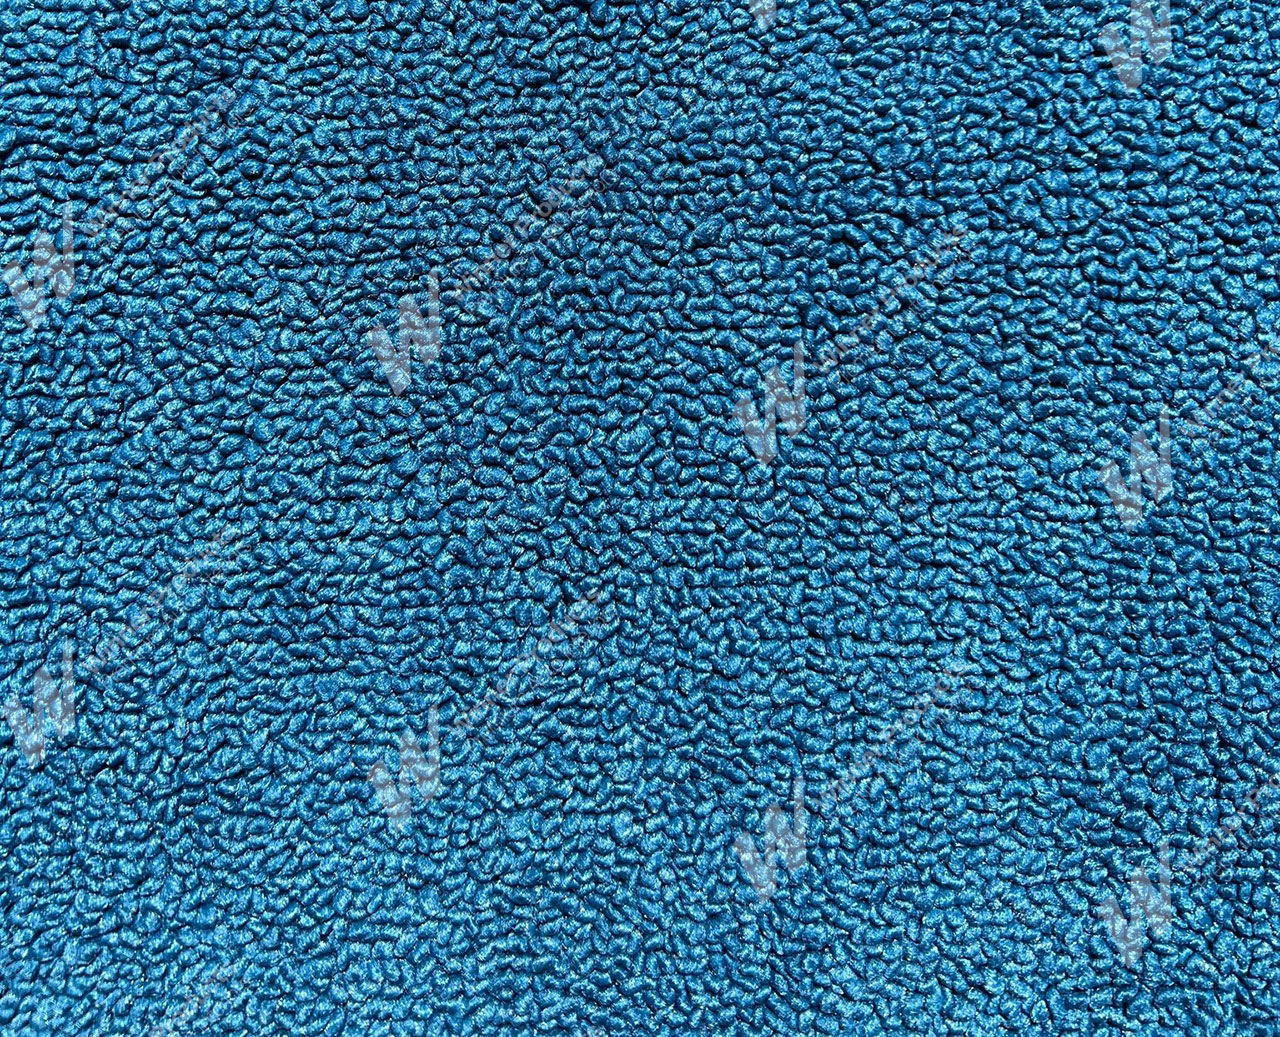 Holden Kingswood HT Kingswood Sedan 14G Twilight Blue & Castillion Weave Carpet (Image 1 of 1)